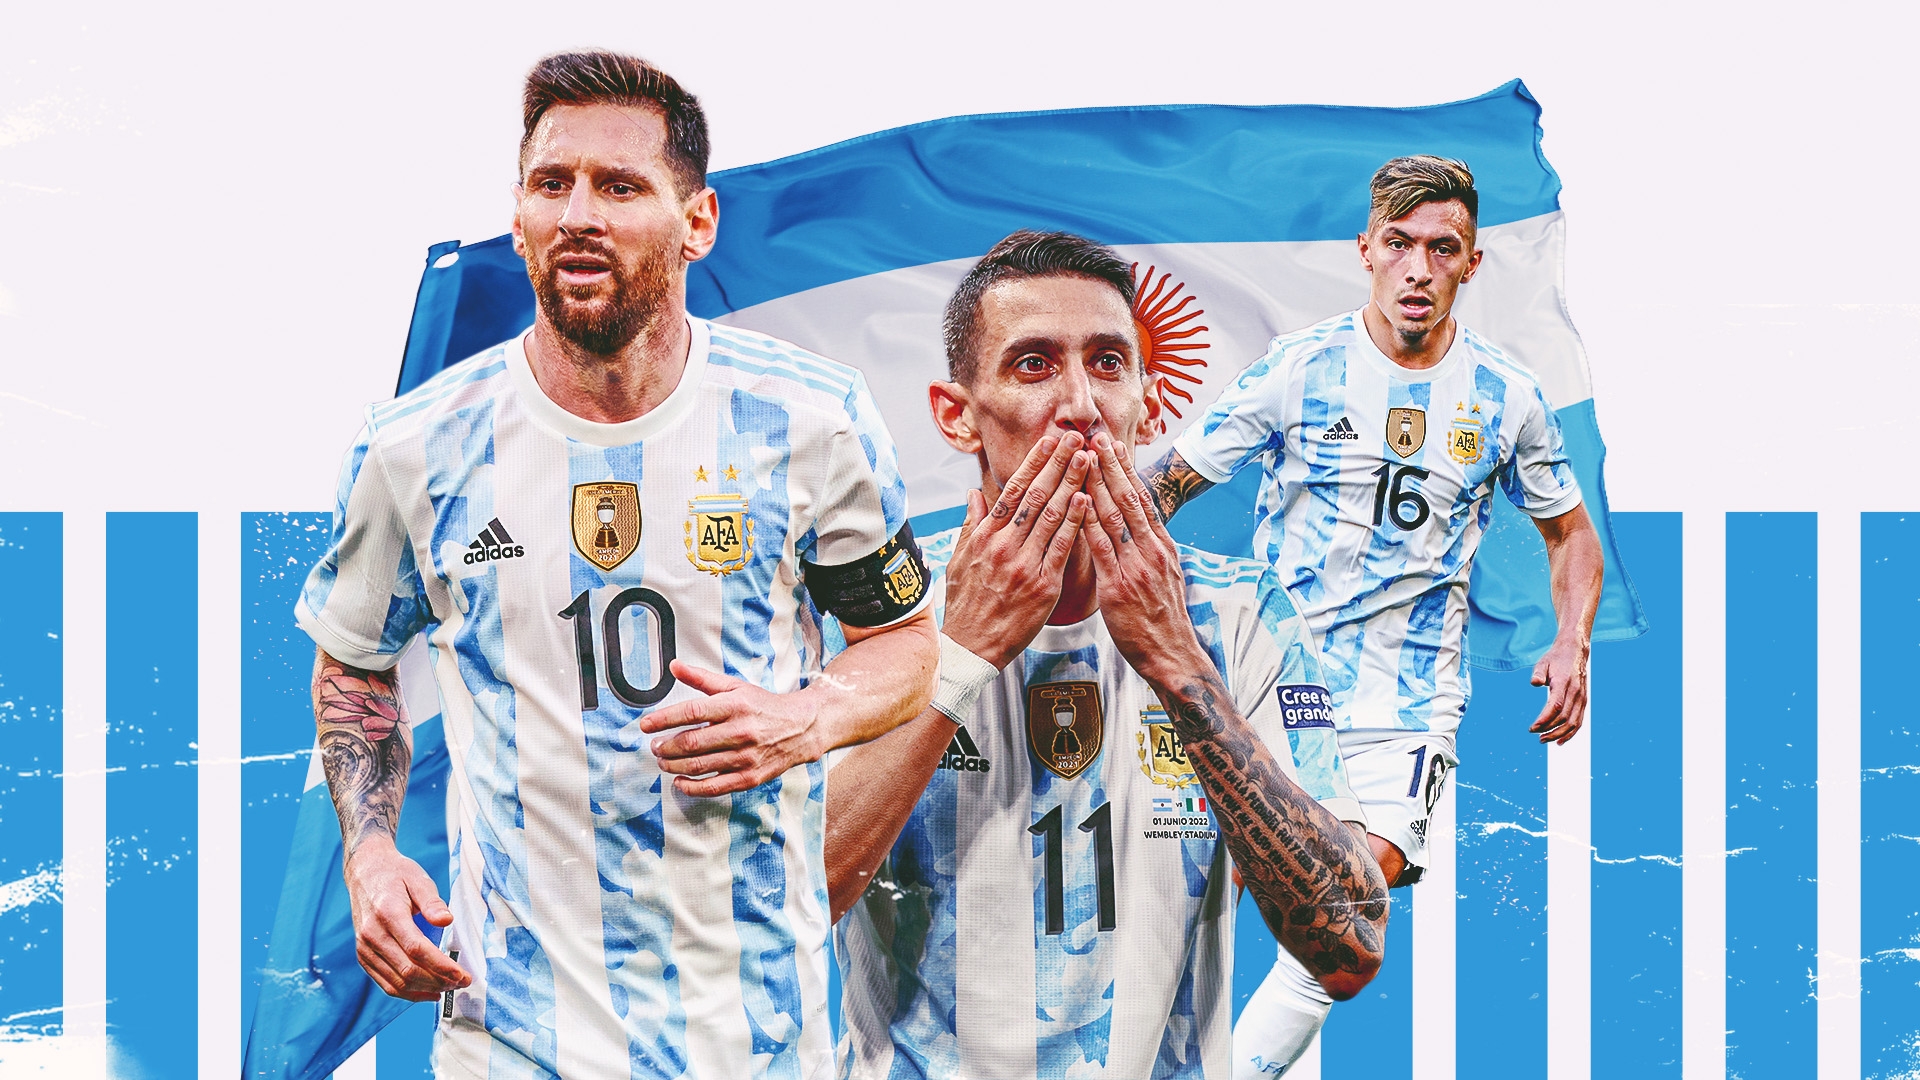 Huyền thoại bóng đá thế giới - Lionel Messi